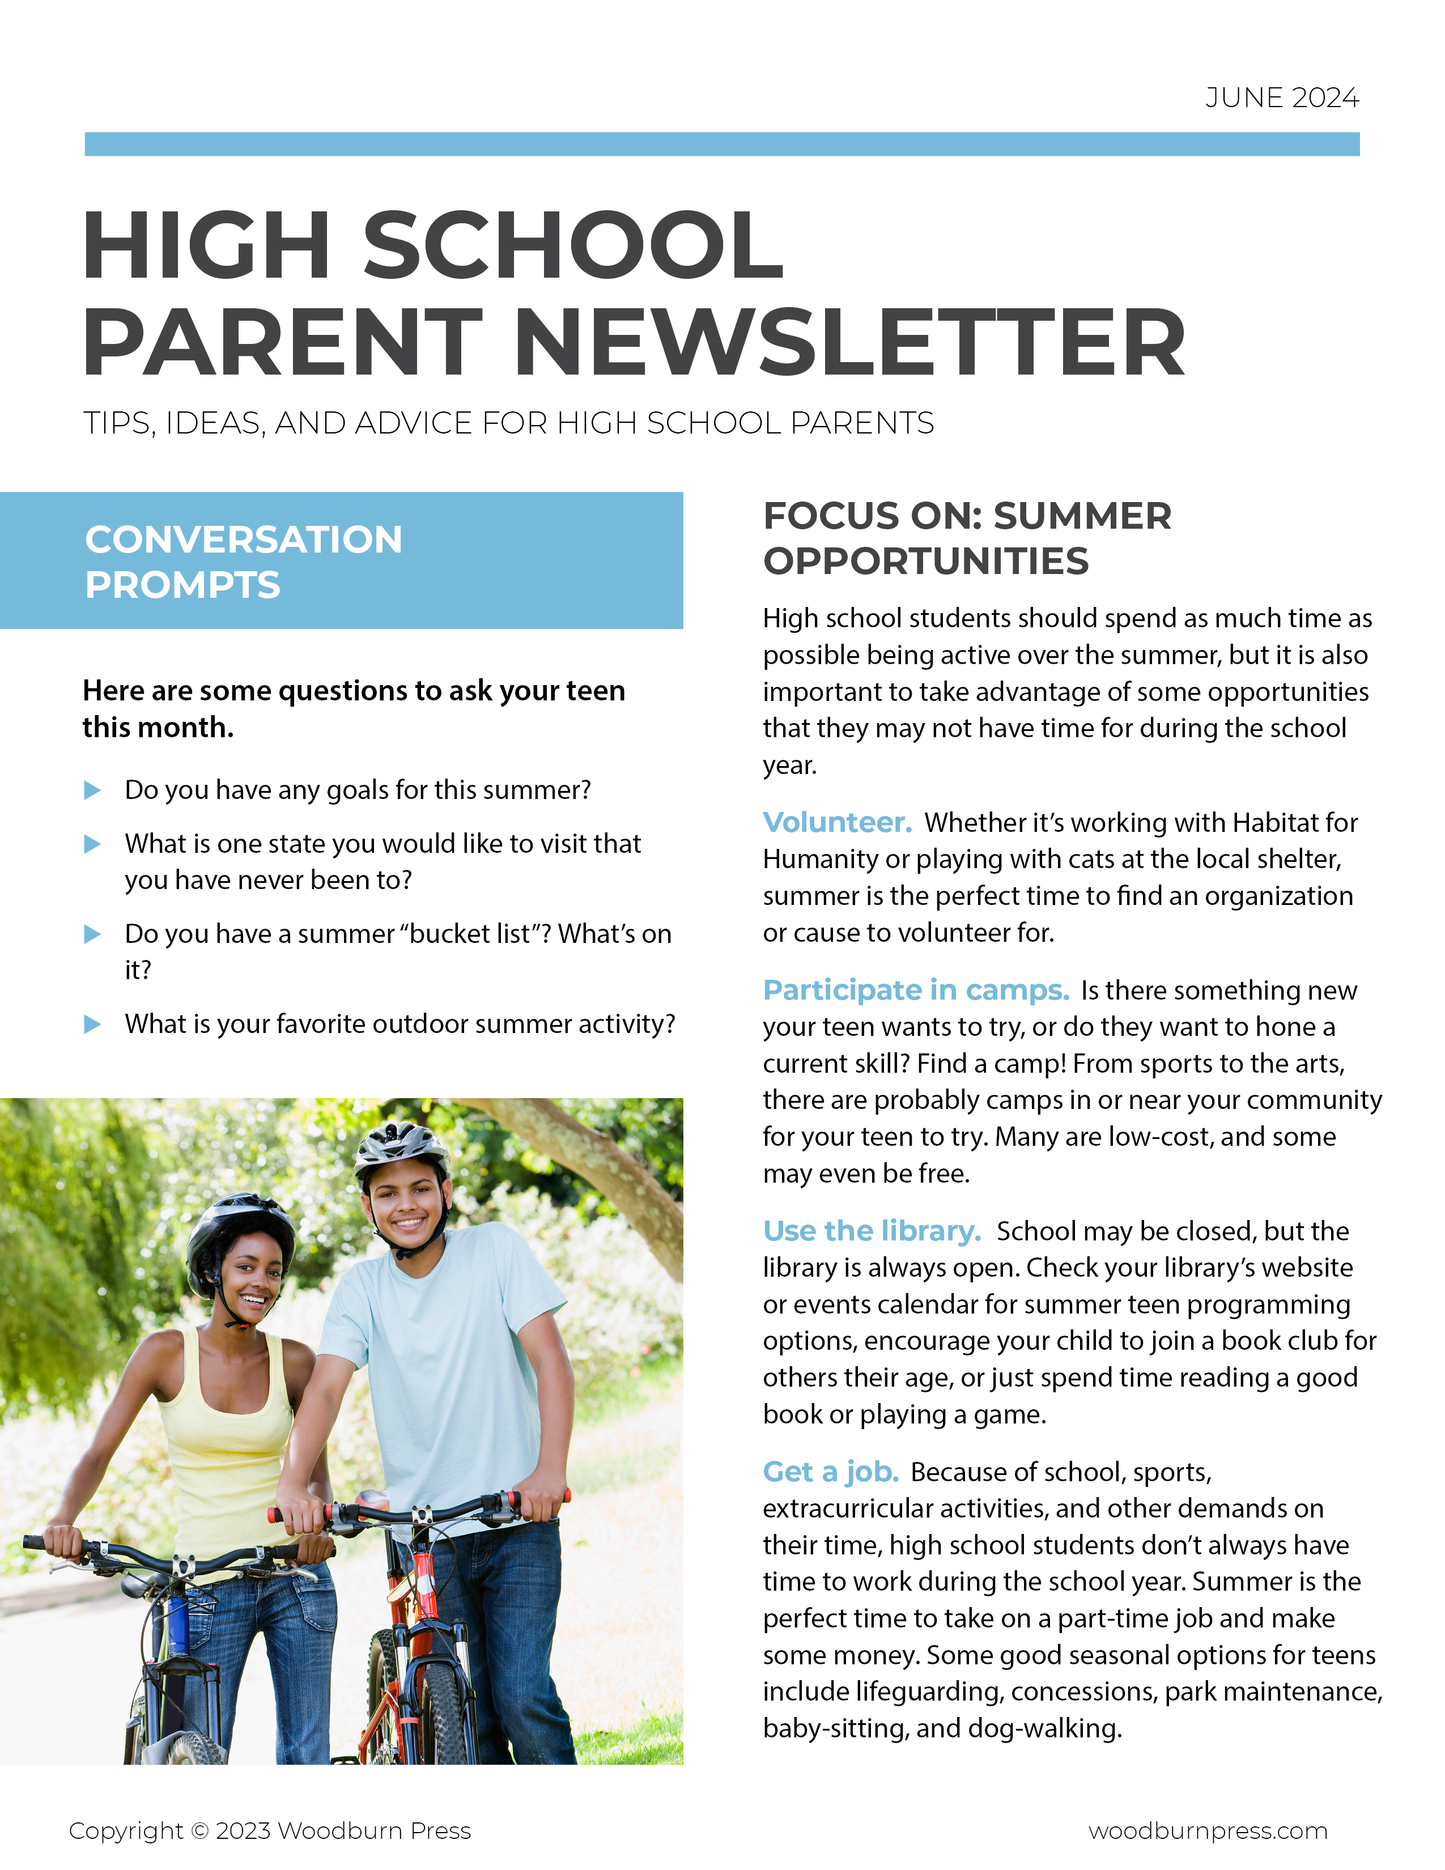 High School Parent Newsletter - June 2024